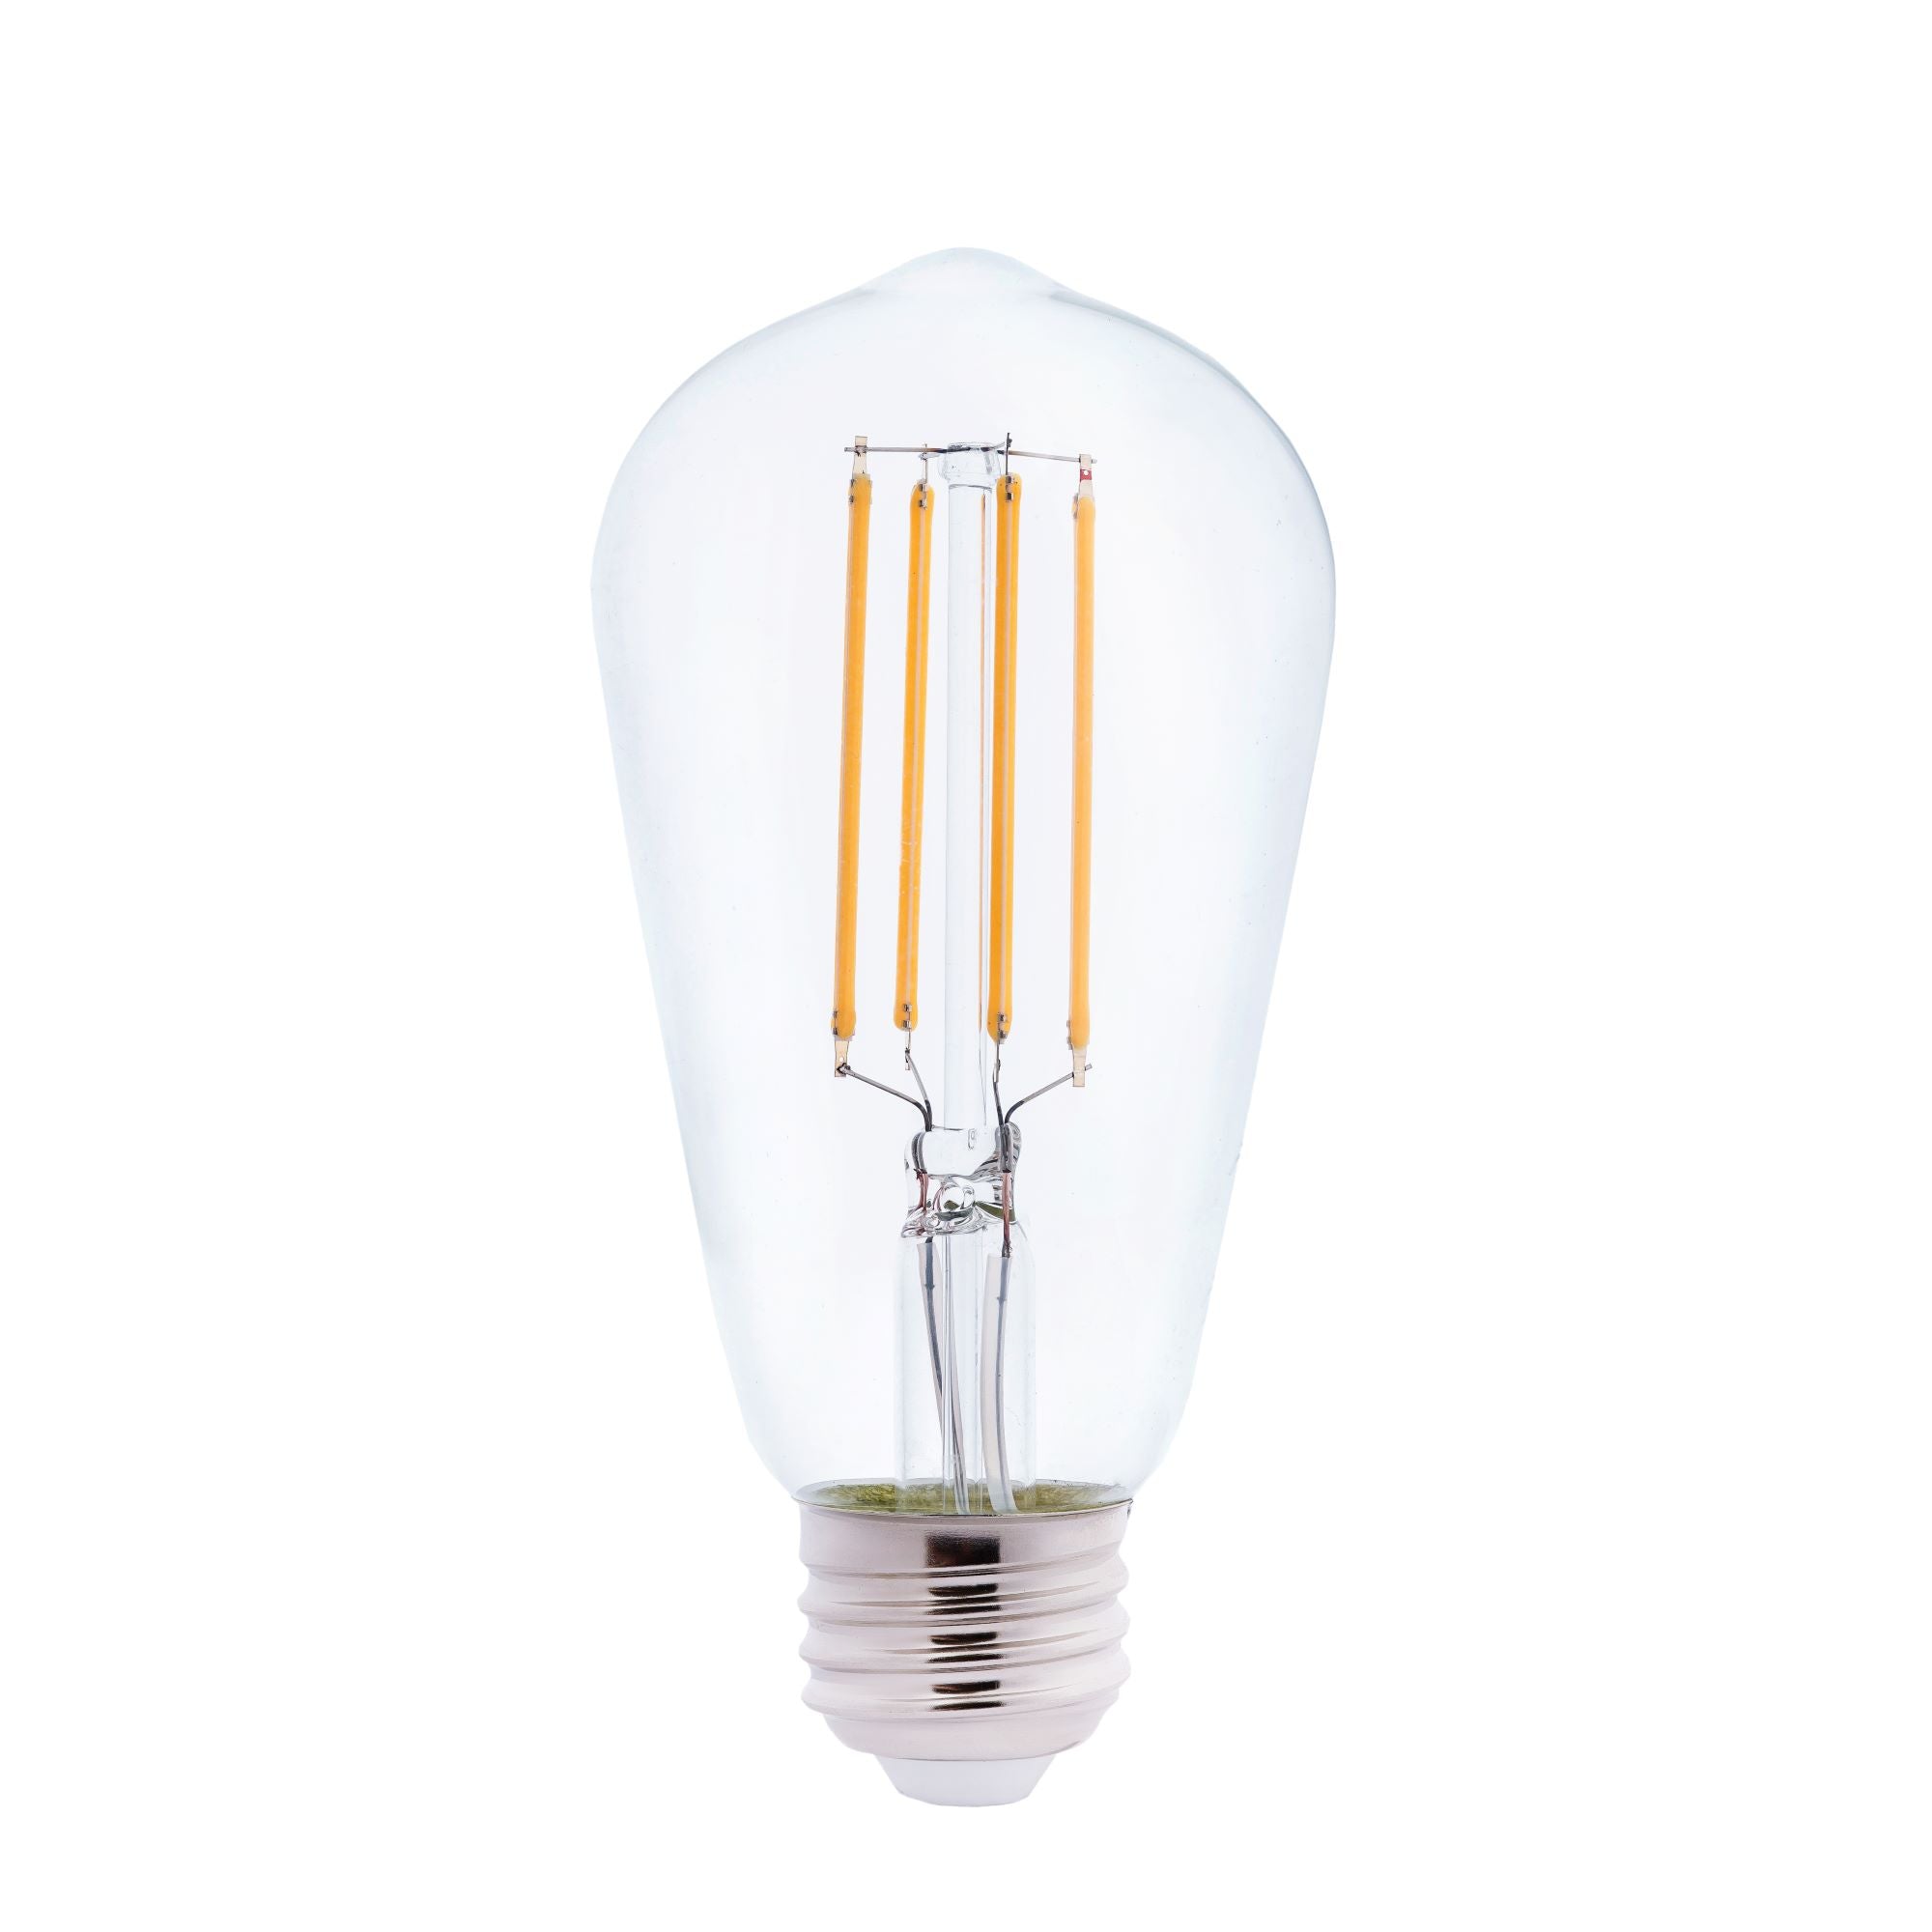 4 Watt ST19 LED Light Bulb